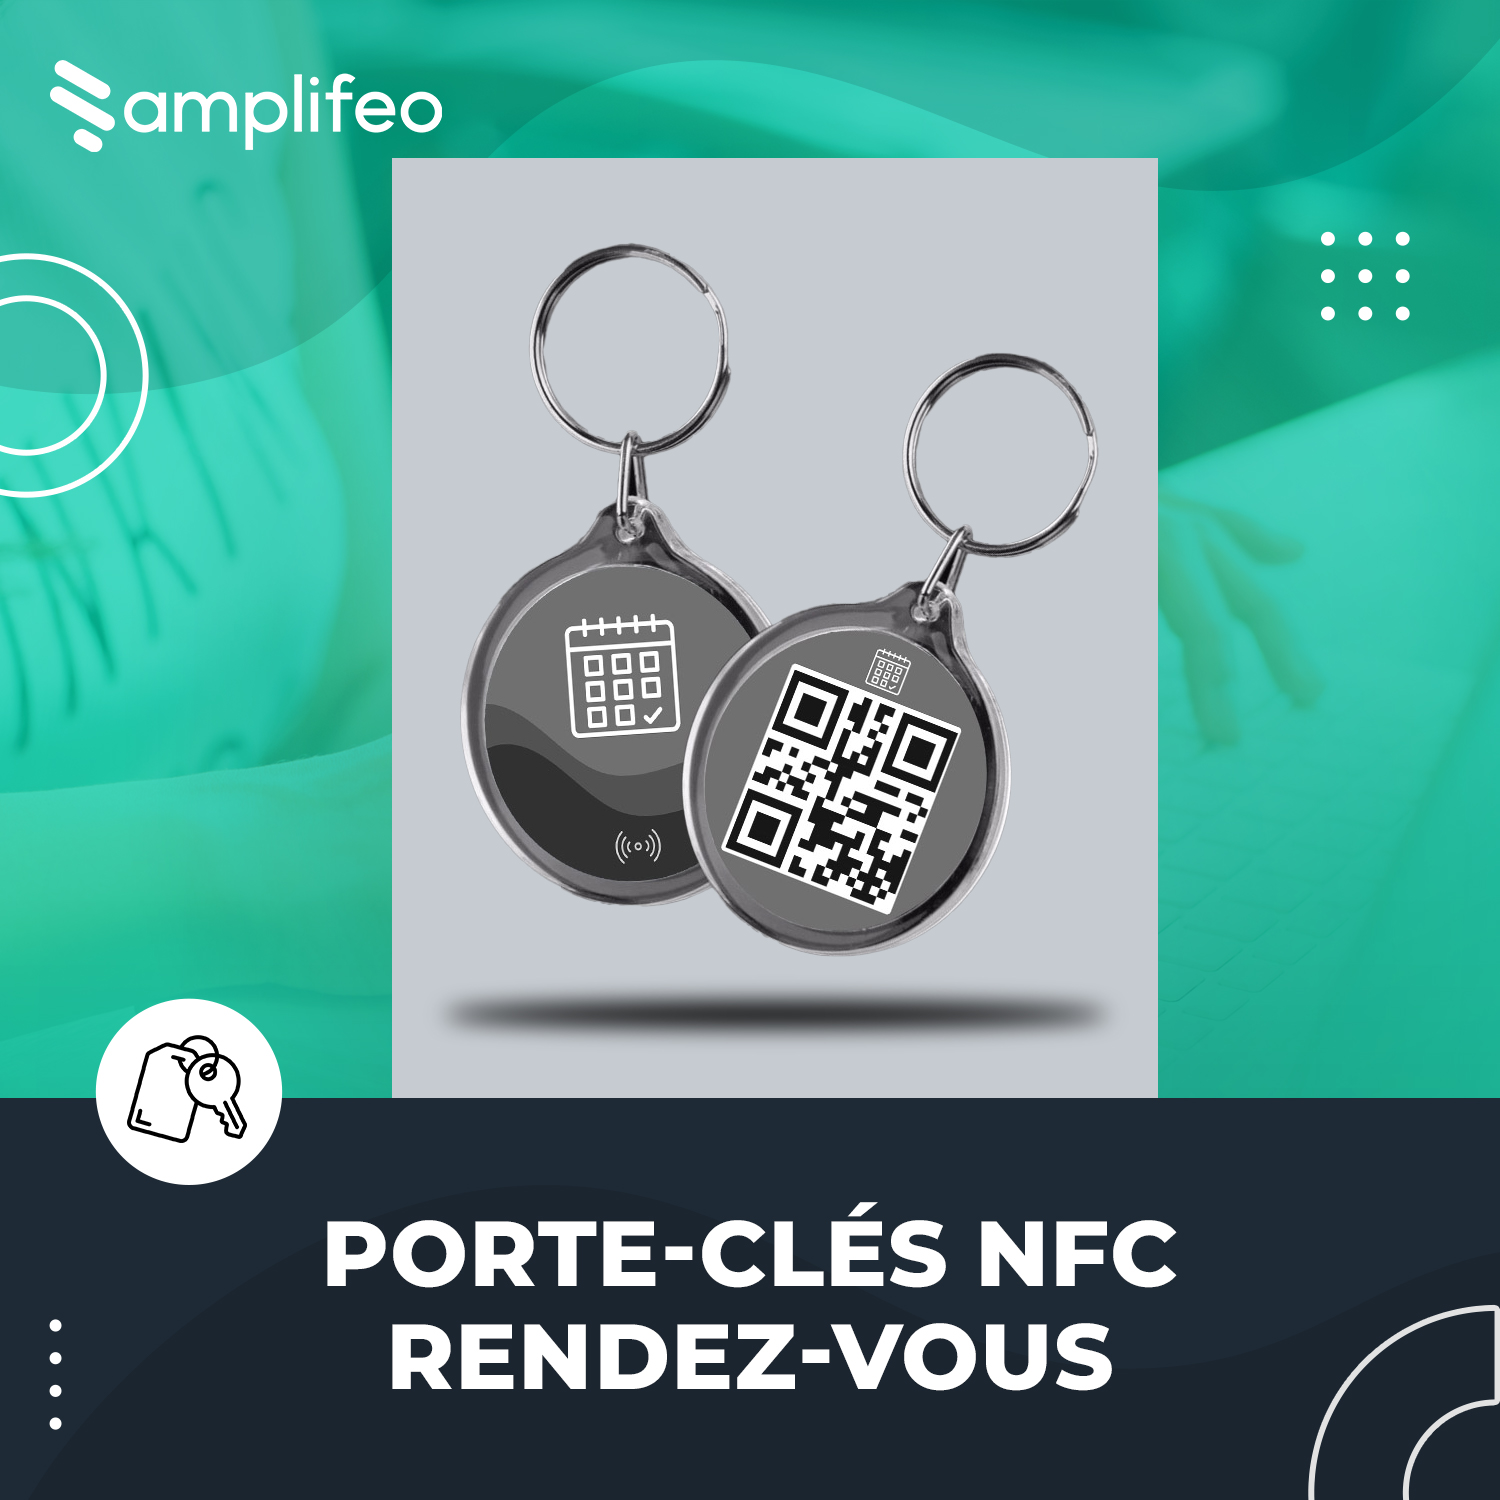 Porte-clés NFC Rendez-vous